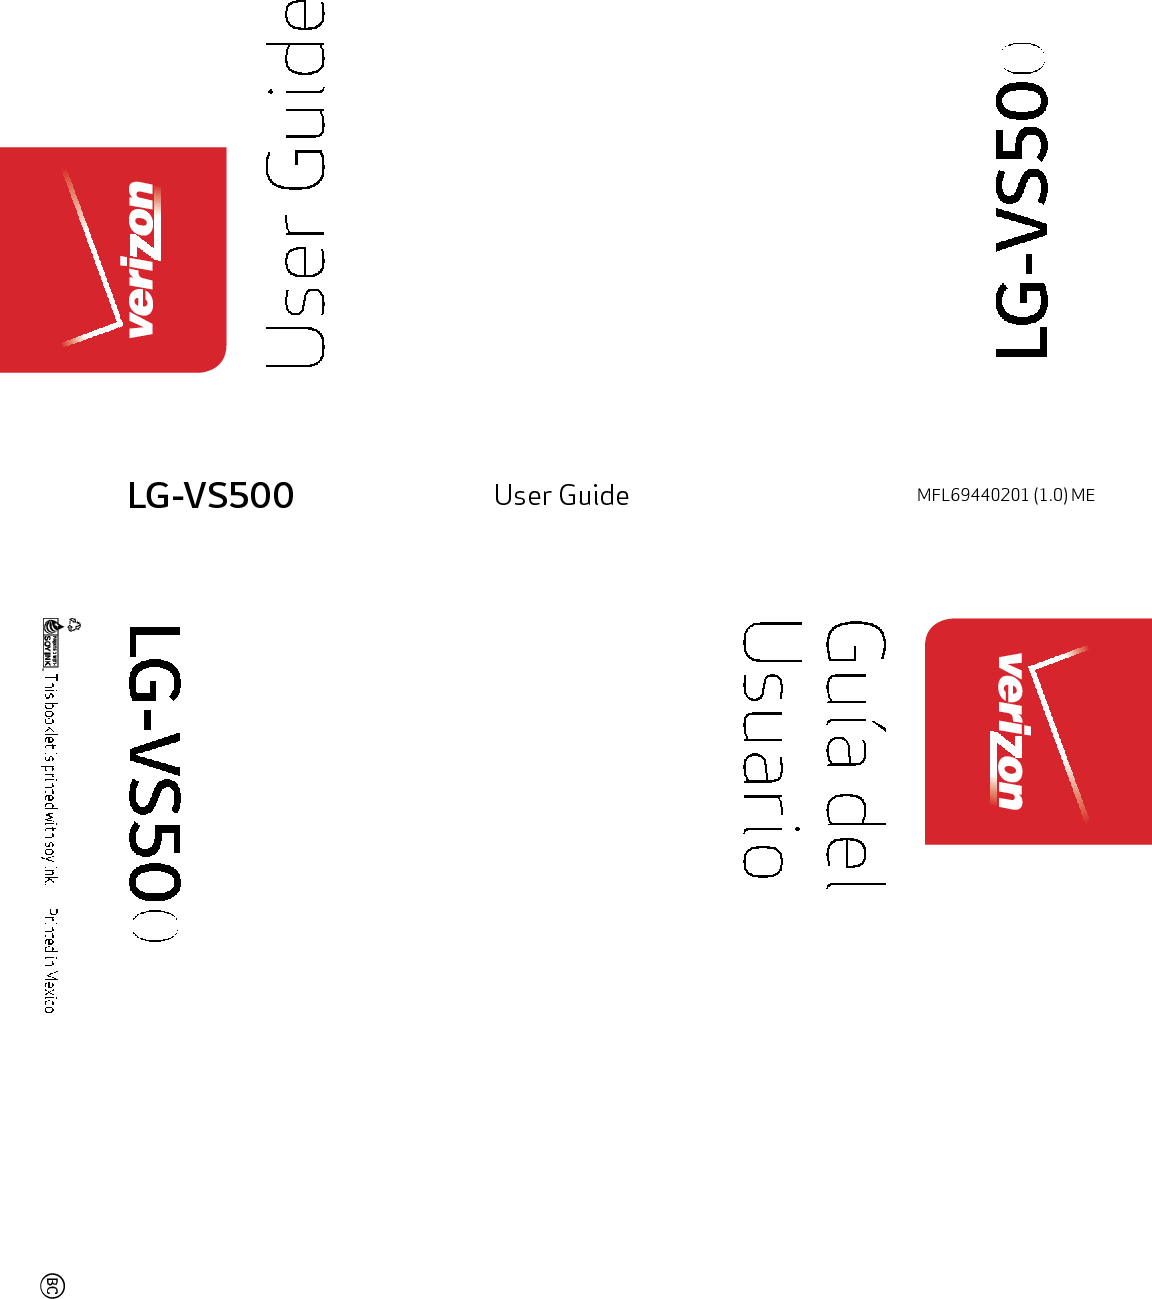 LG-VS500LG-VS500LG-VS500LG-VS500LG-VS500LG-VS500LG-VS500LG-VS500LG-VS500LG-VS500